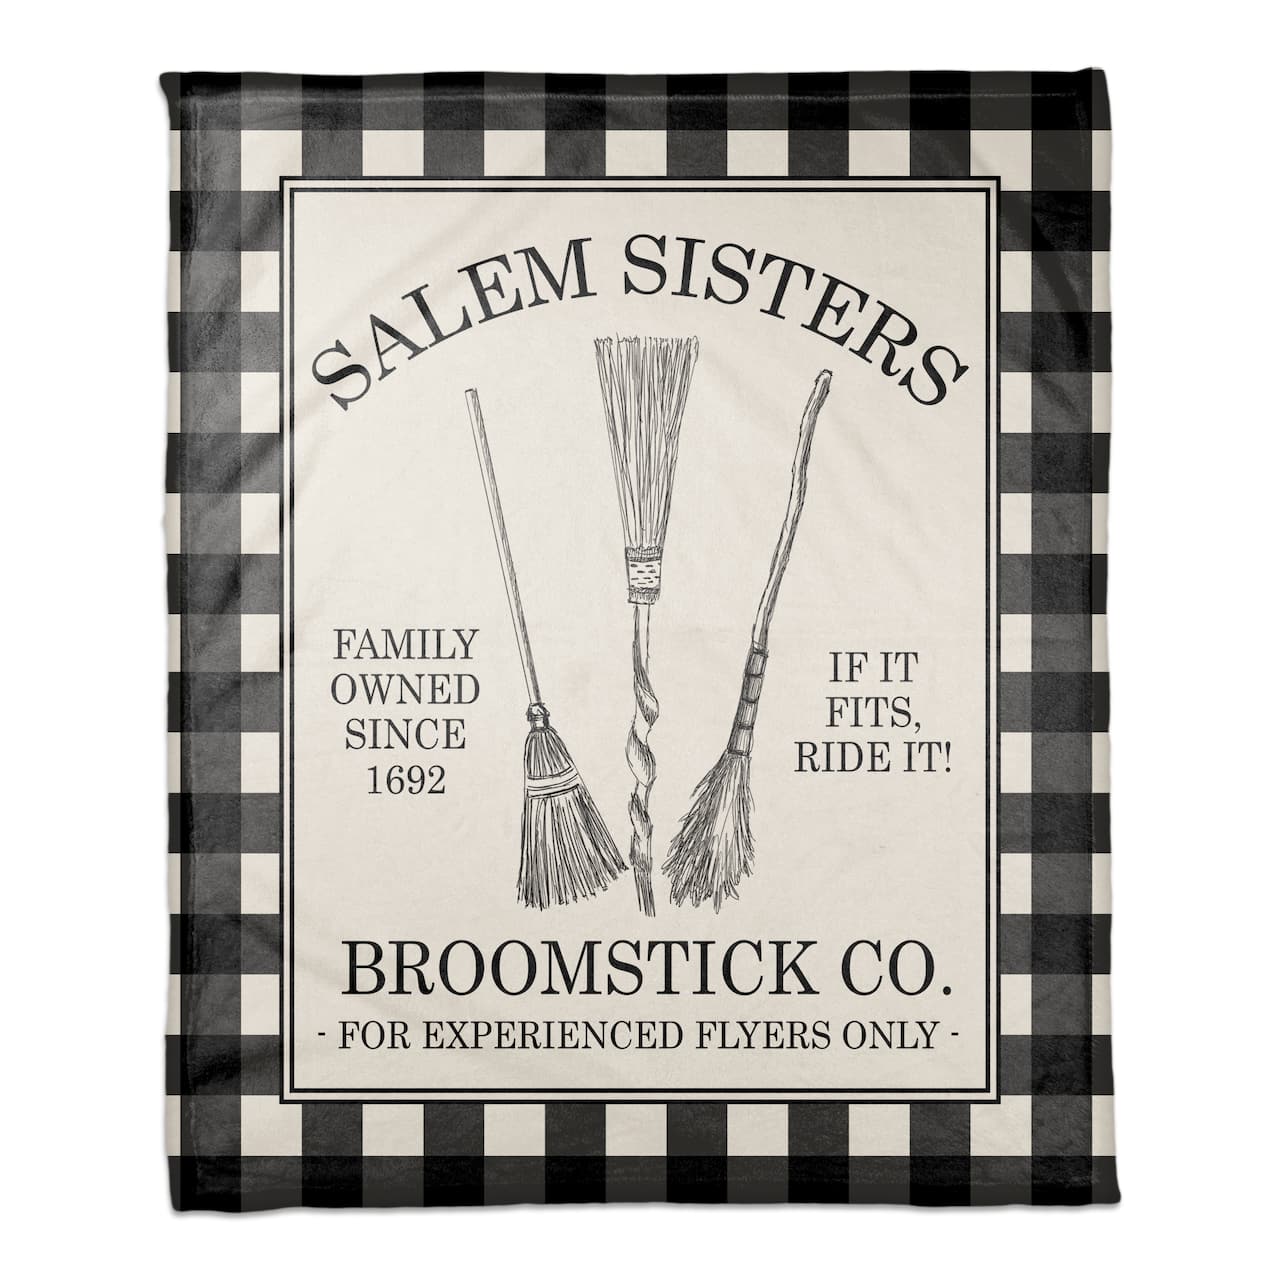 Salem Sisters Broomstick Co. Coral Fleece Blanket